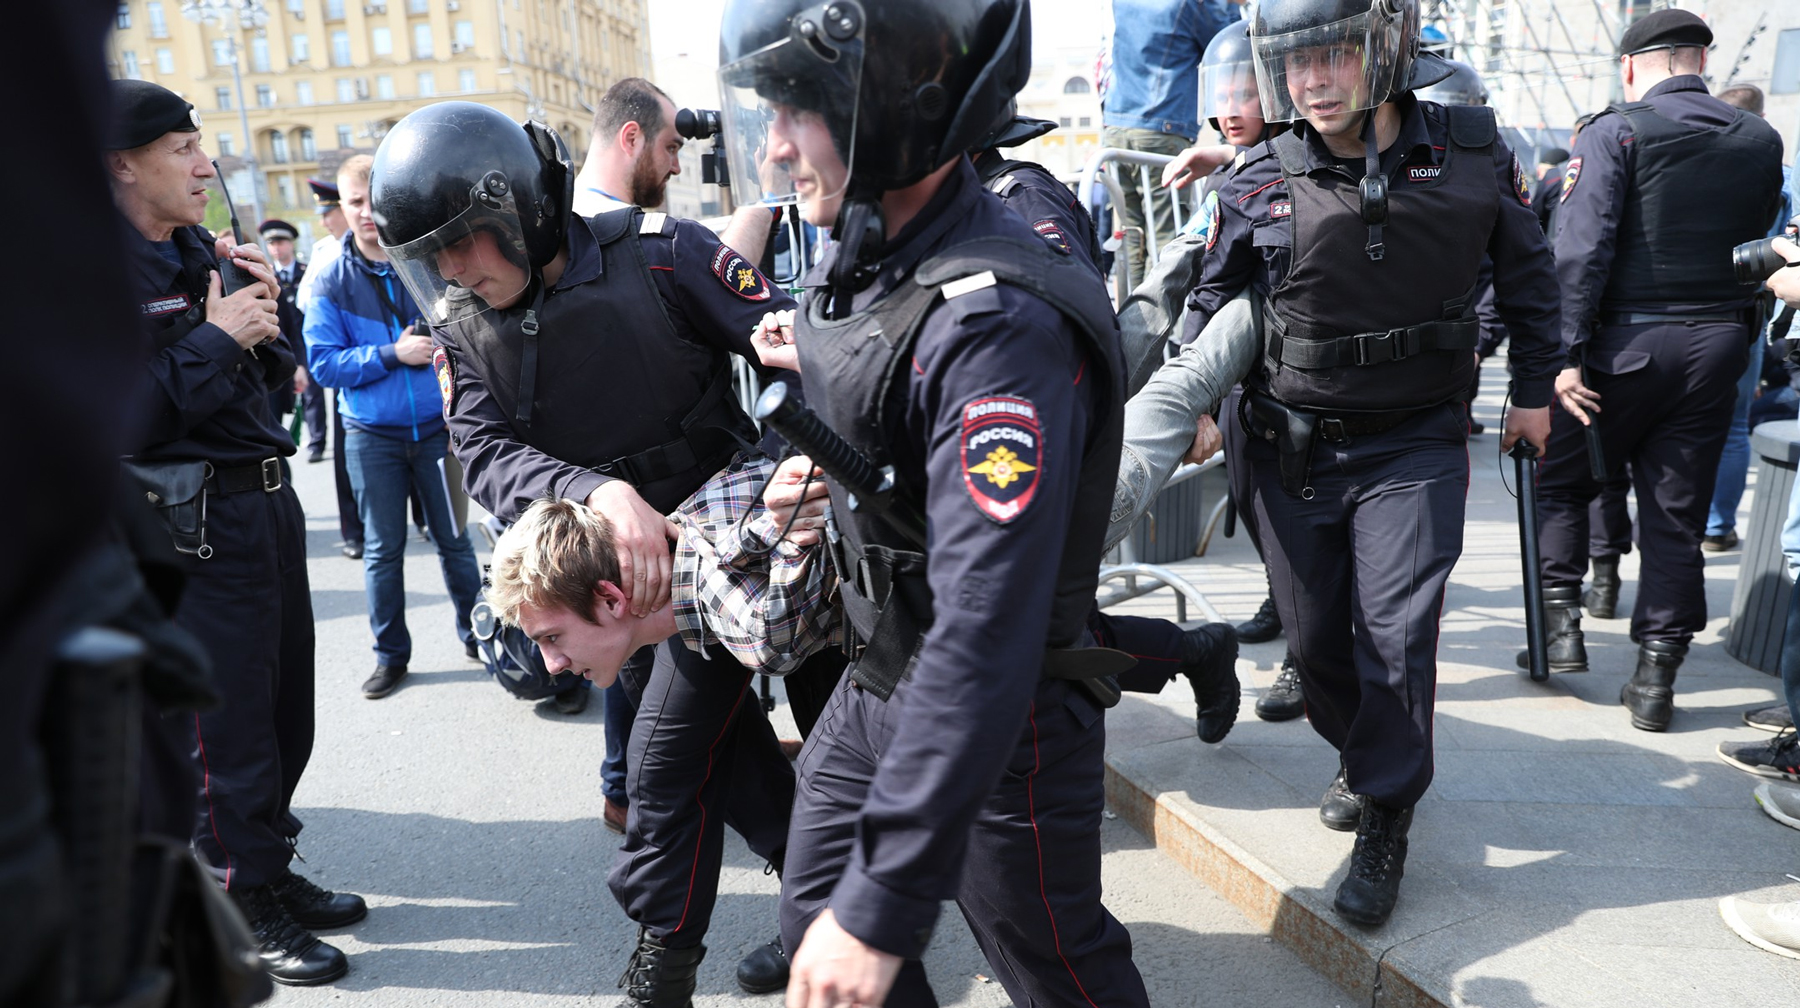 Показываем, как проходил несанкционированный митинг в Москве Фото: © Daily Storm/Алексей Голенищев